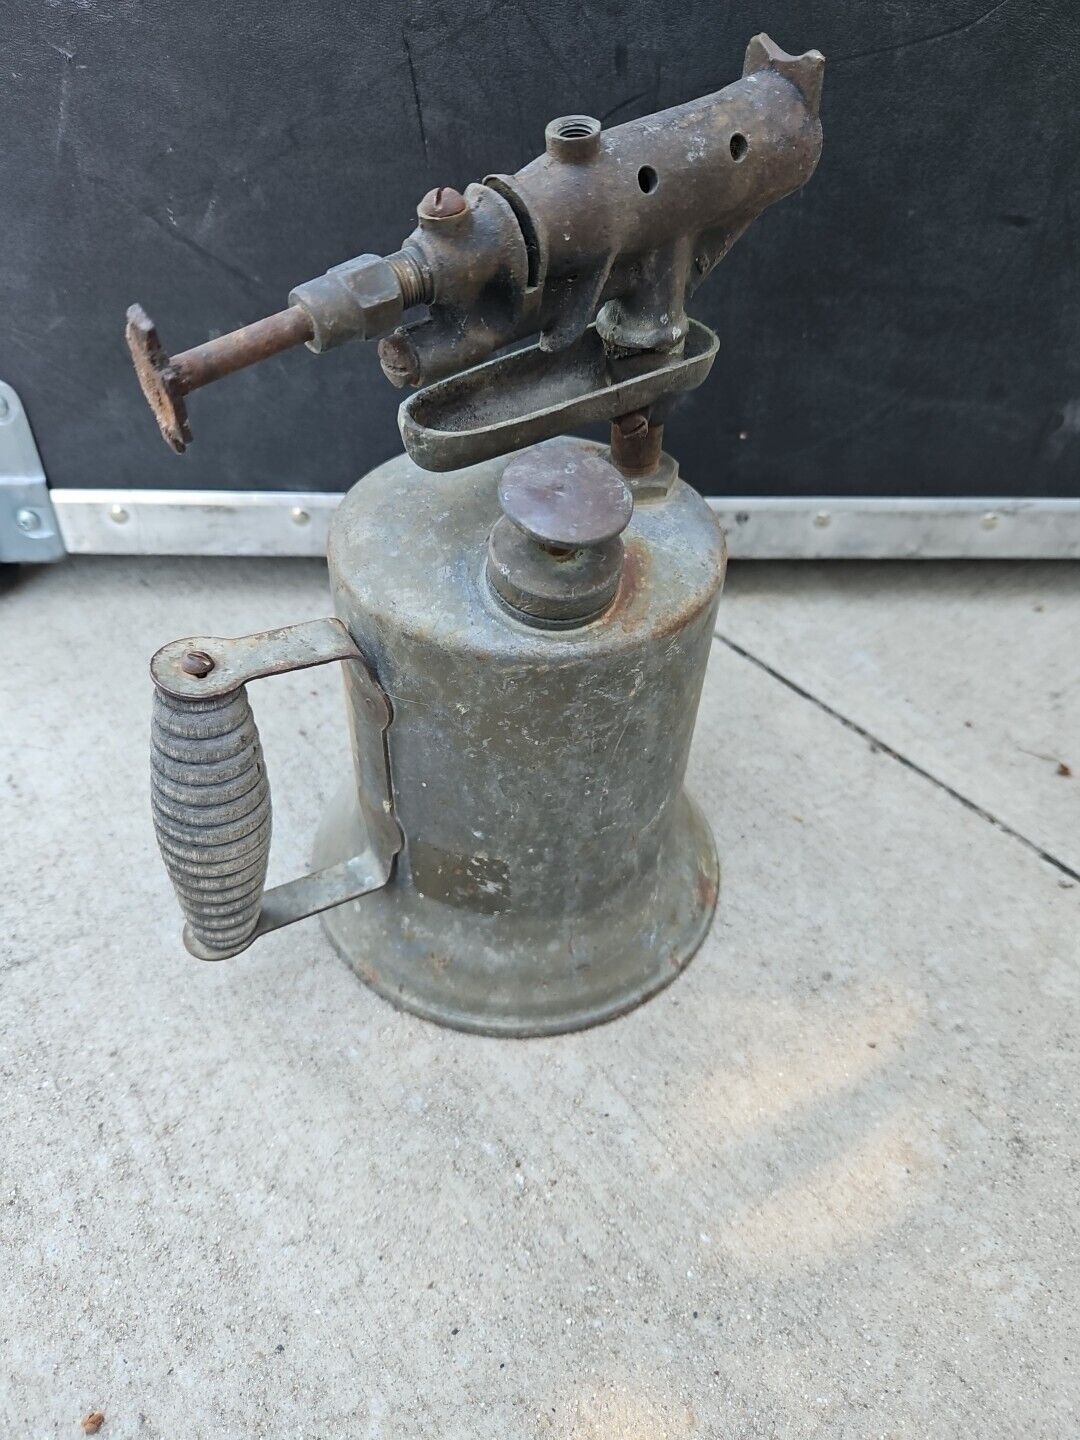 Vintage Antique Welding Plumbing Soldering Iron Gas Blow Torch